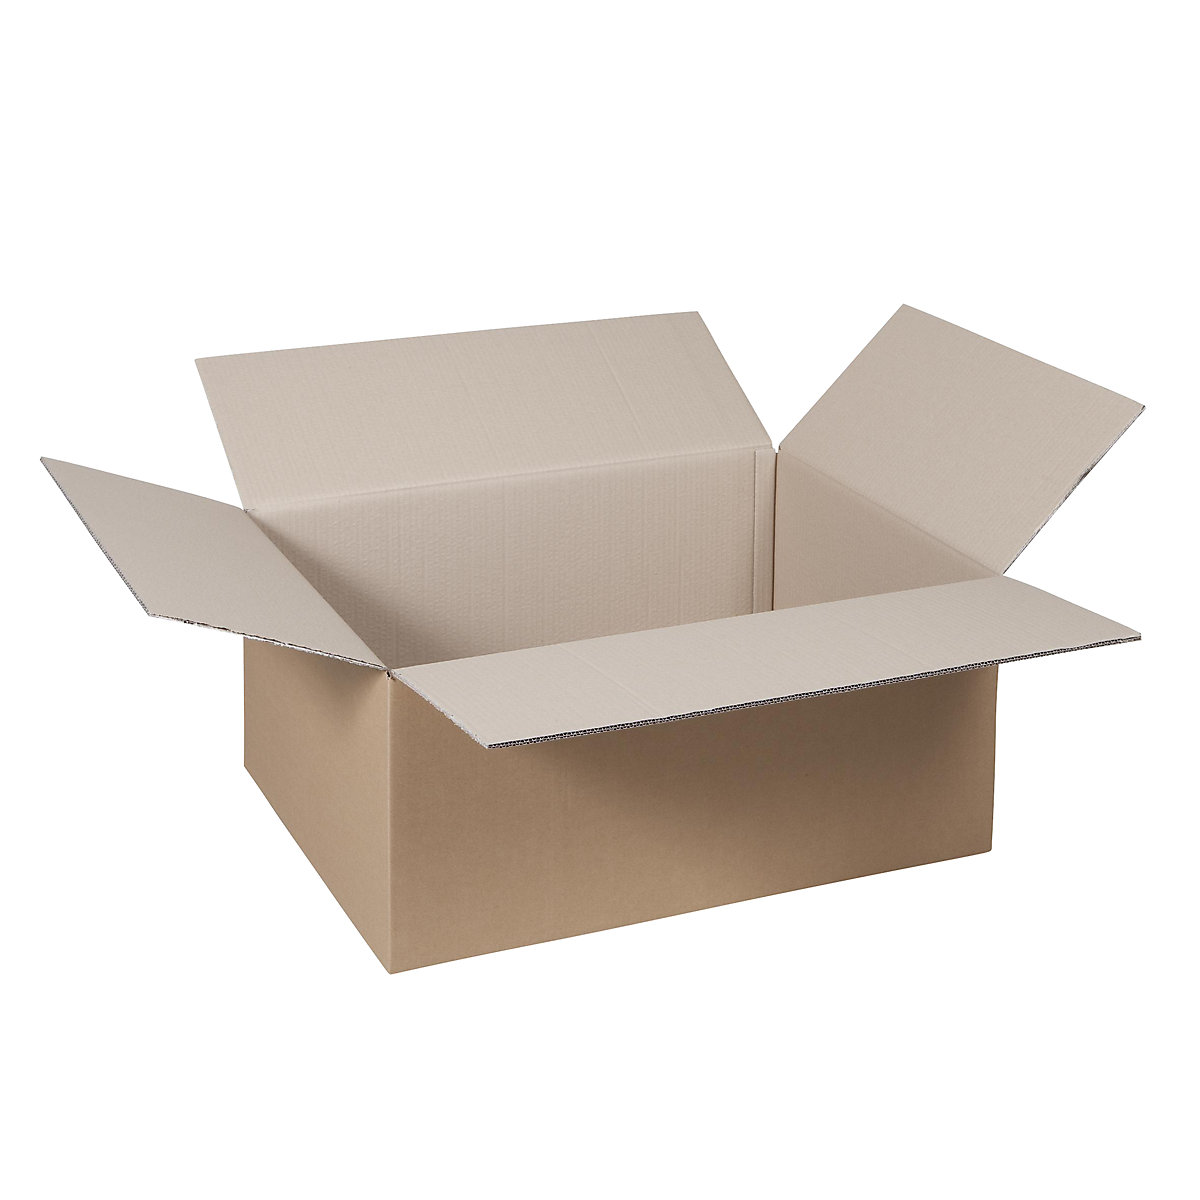 Cutie de carton pliantă, FEFCO 0201, cu 2 straturi de carton ondulat, dimensiuni interioare 400 x 300 x 200 mm, amb. 100 buc.-49